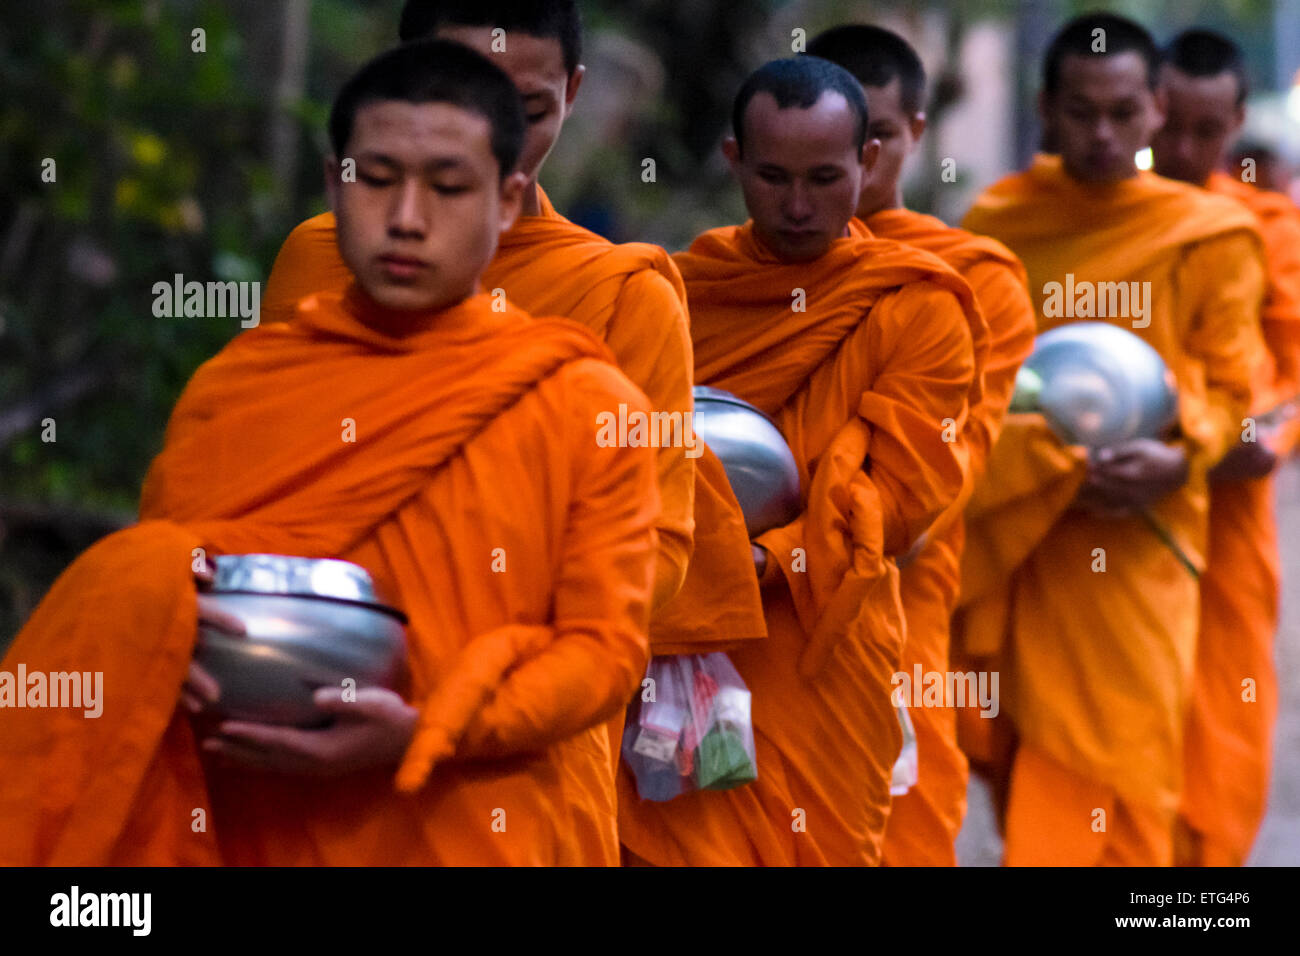 L'Asie. La Thaïlande, Chiang Mai. Les jeunes moines Bouddhistes sur leur procession du matin pour des offrandes de nourriture à proximité d'un monastère. Banque D'Images